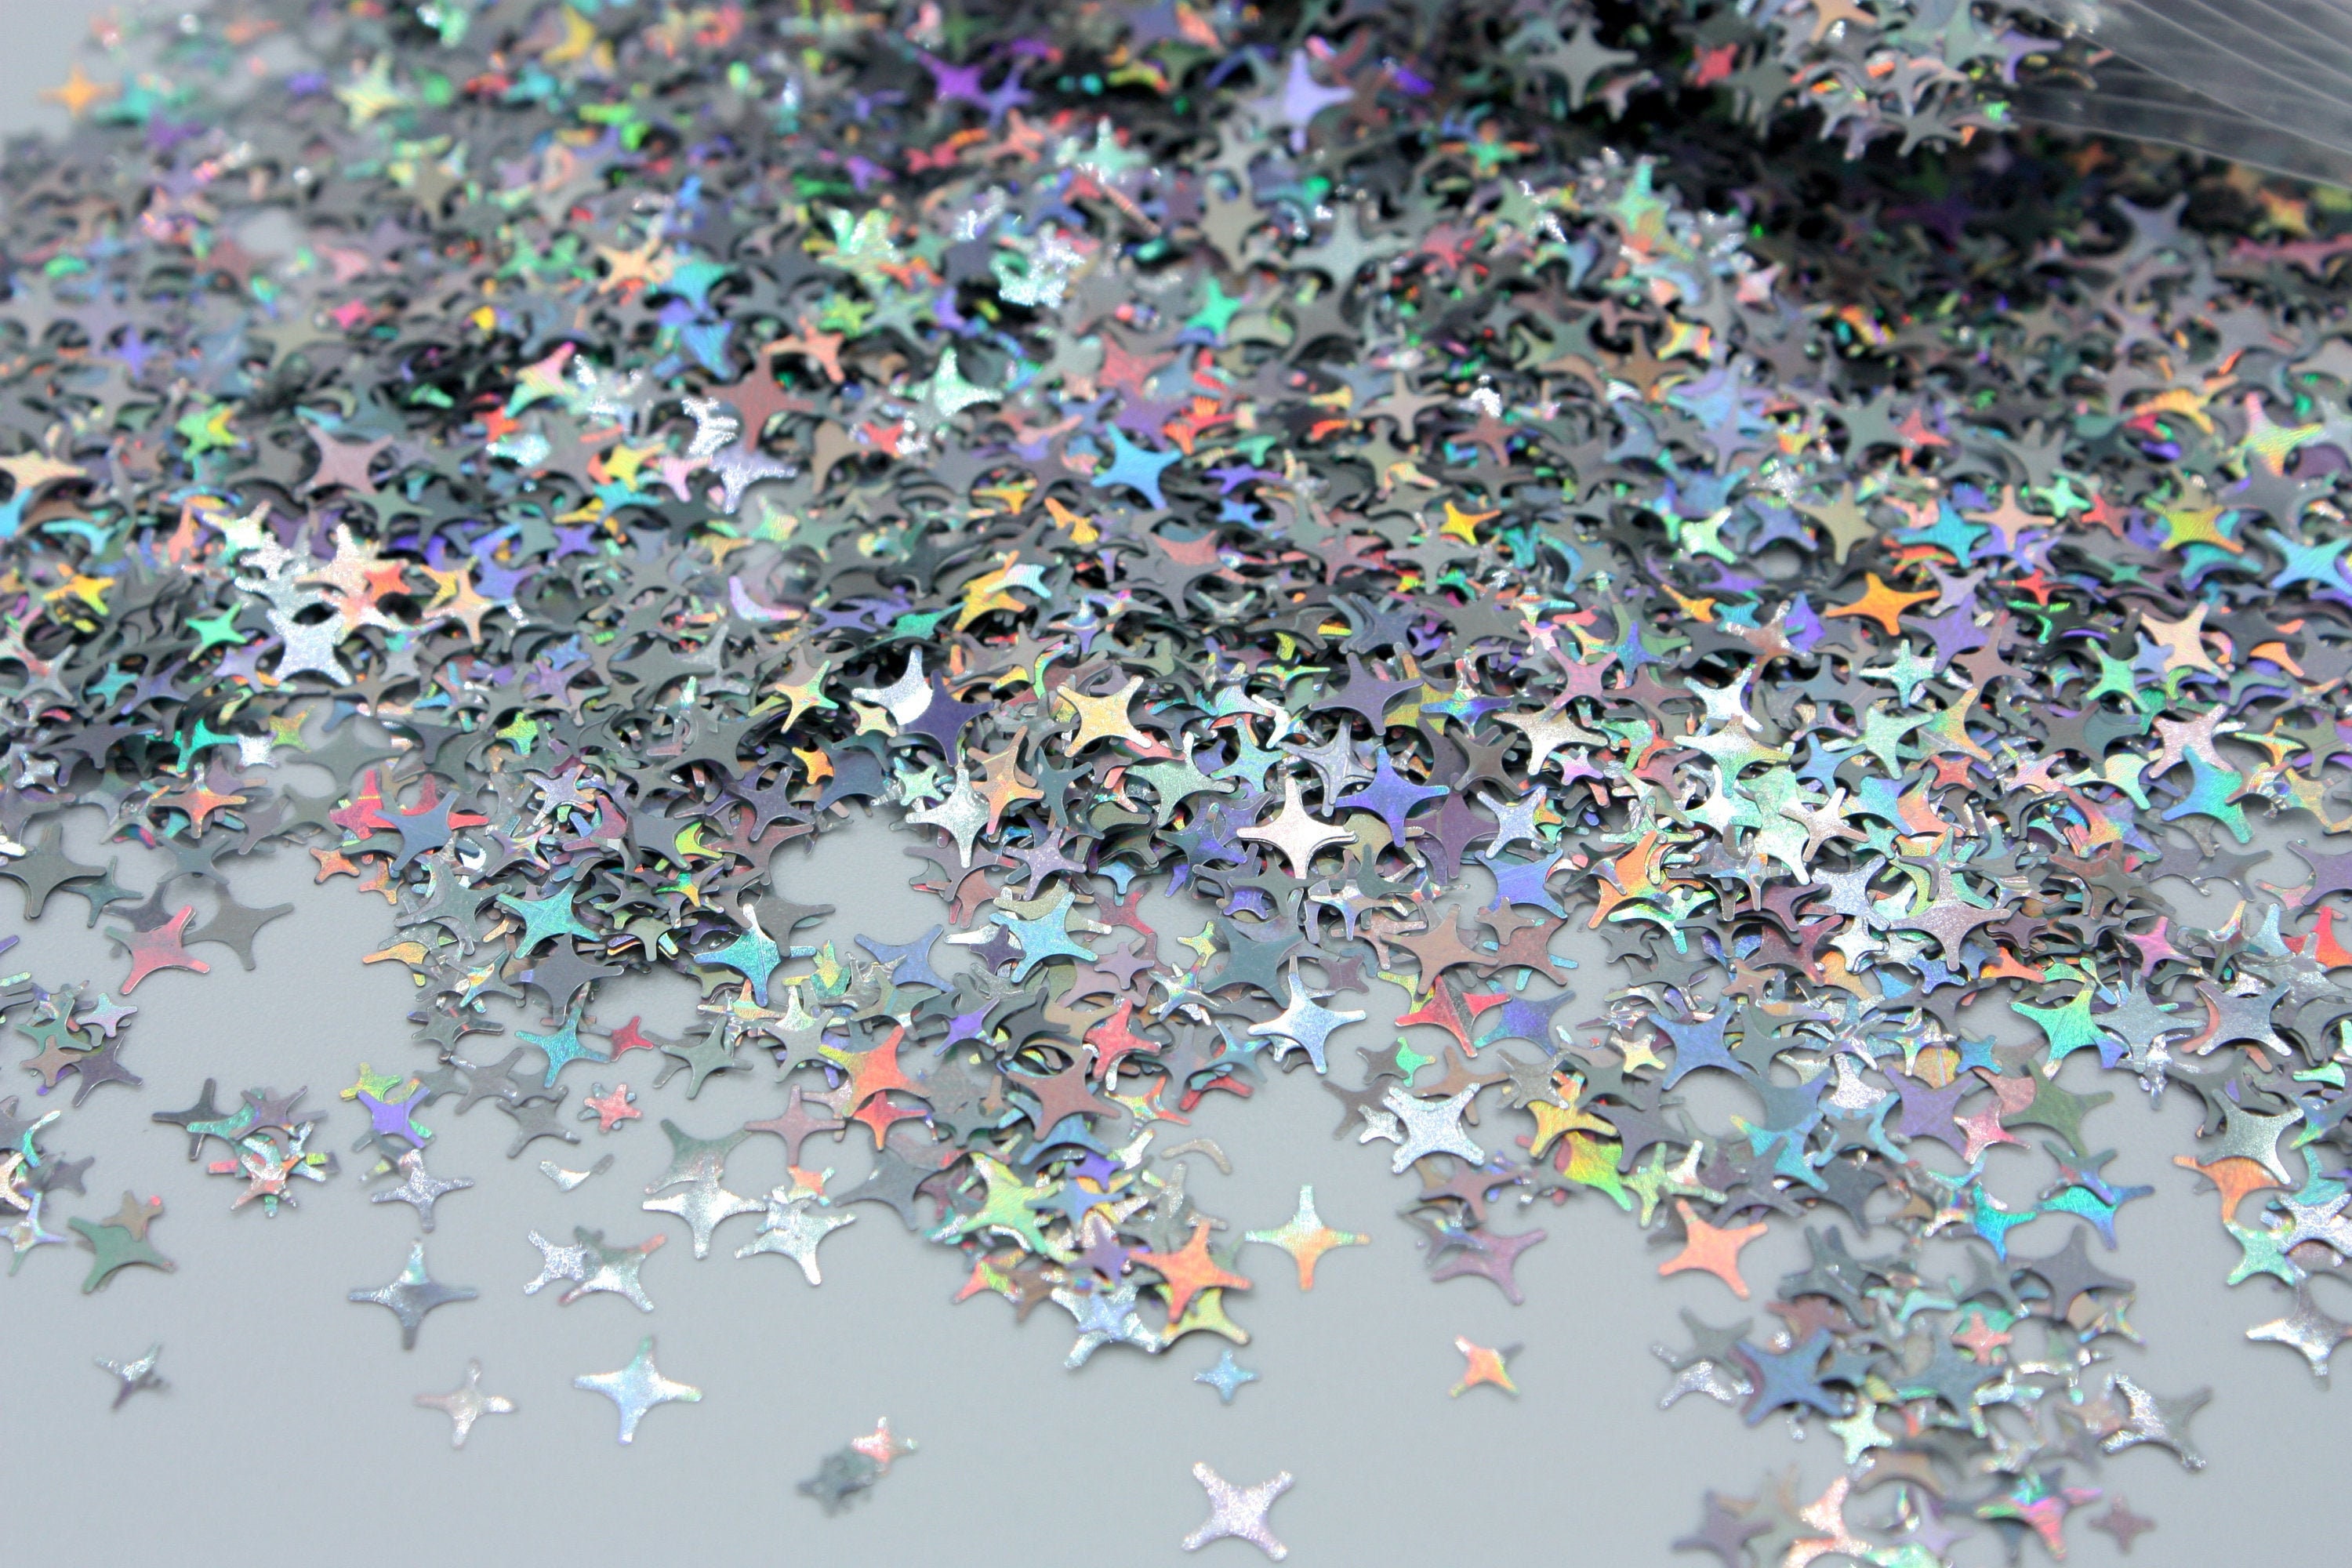 Holo Silver Stars - Shaped Glitter – Glitters Matter®